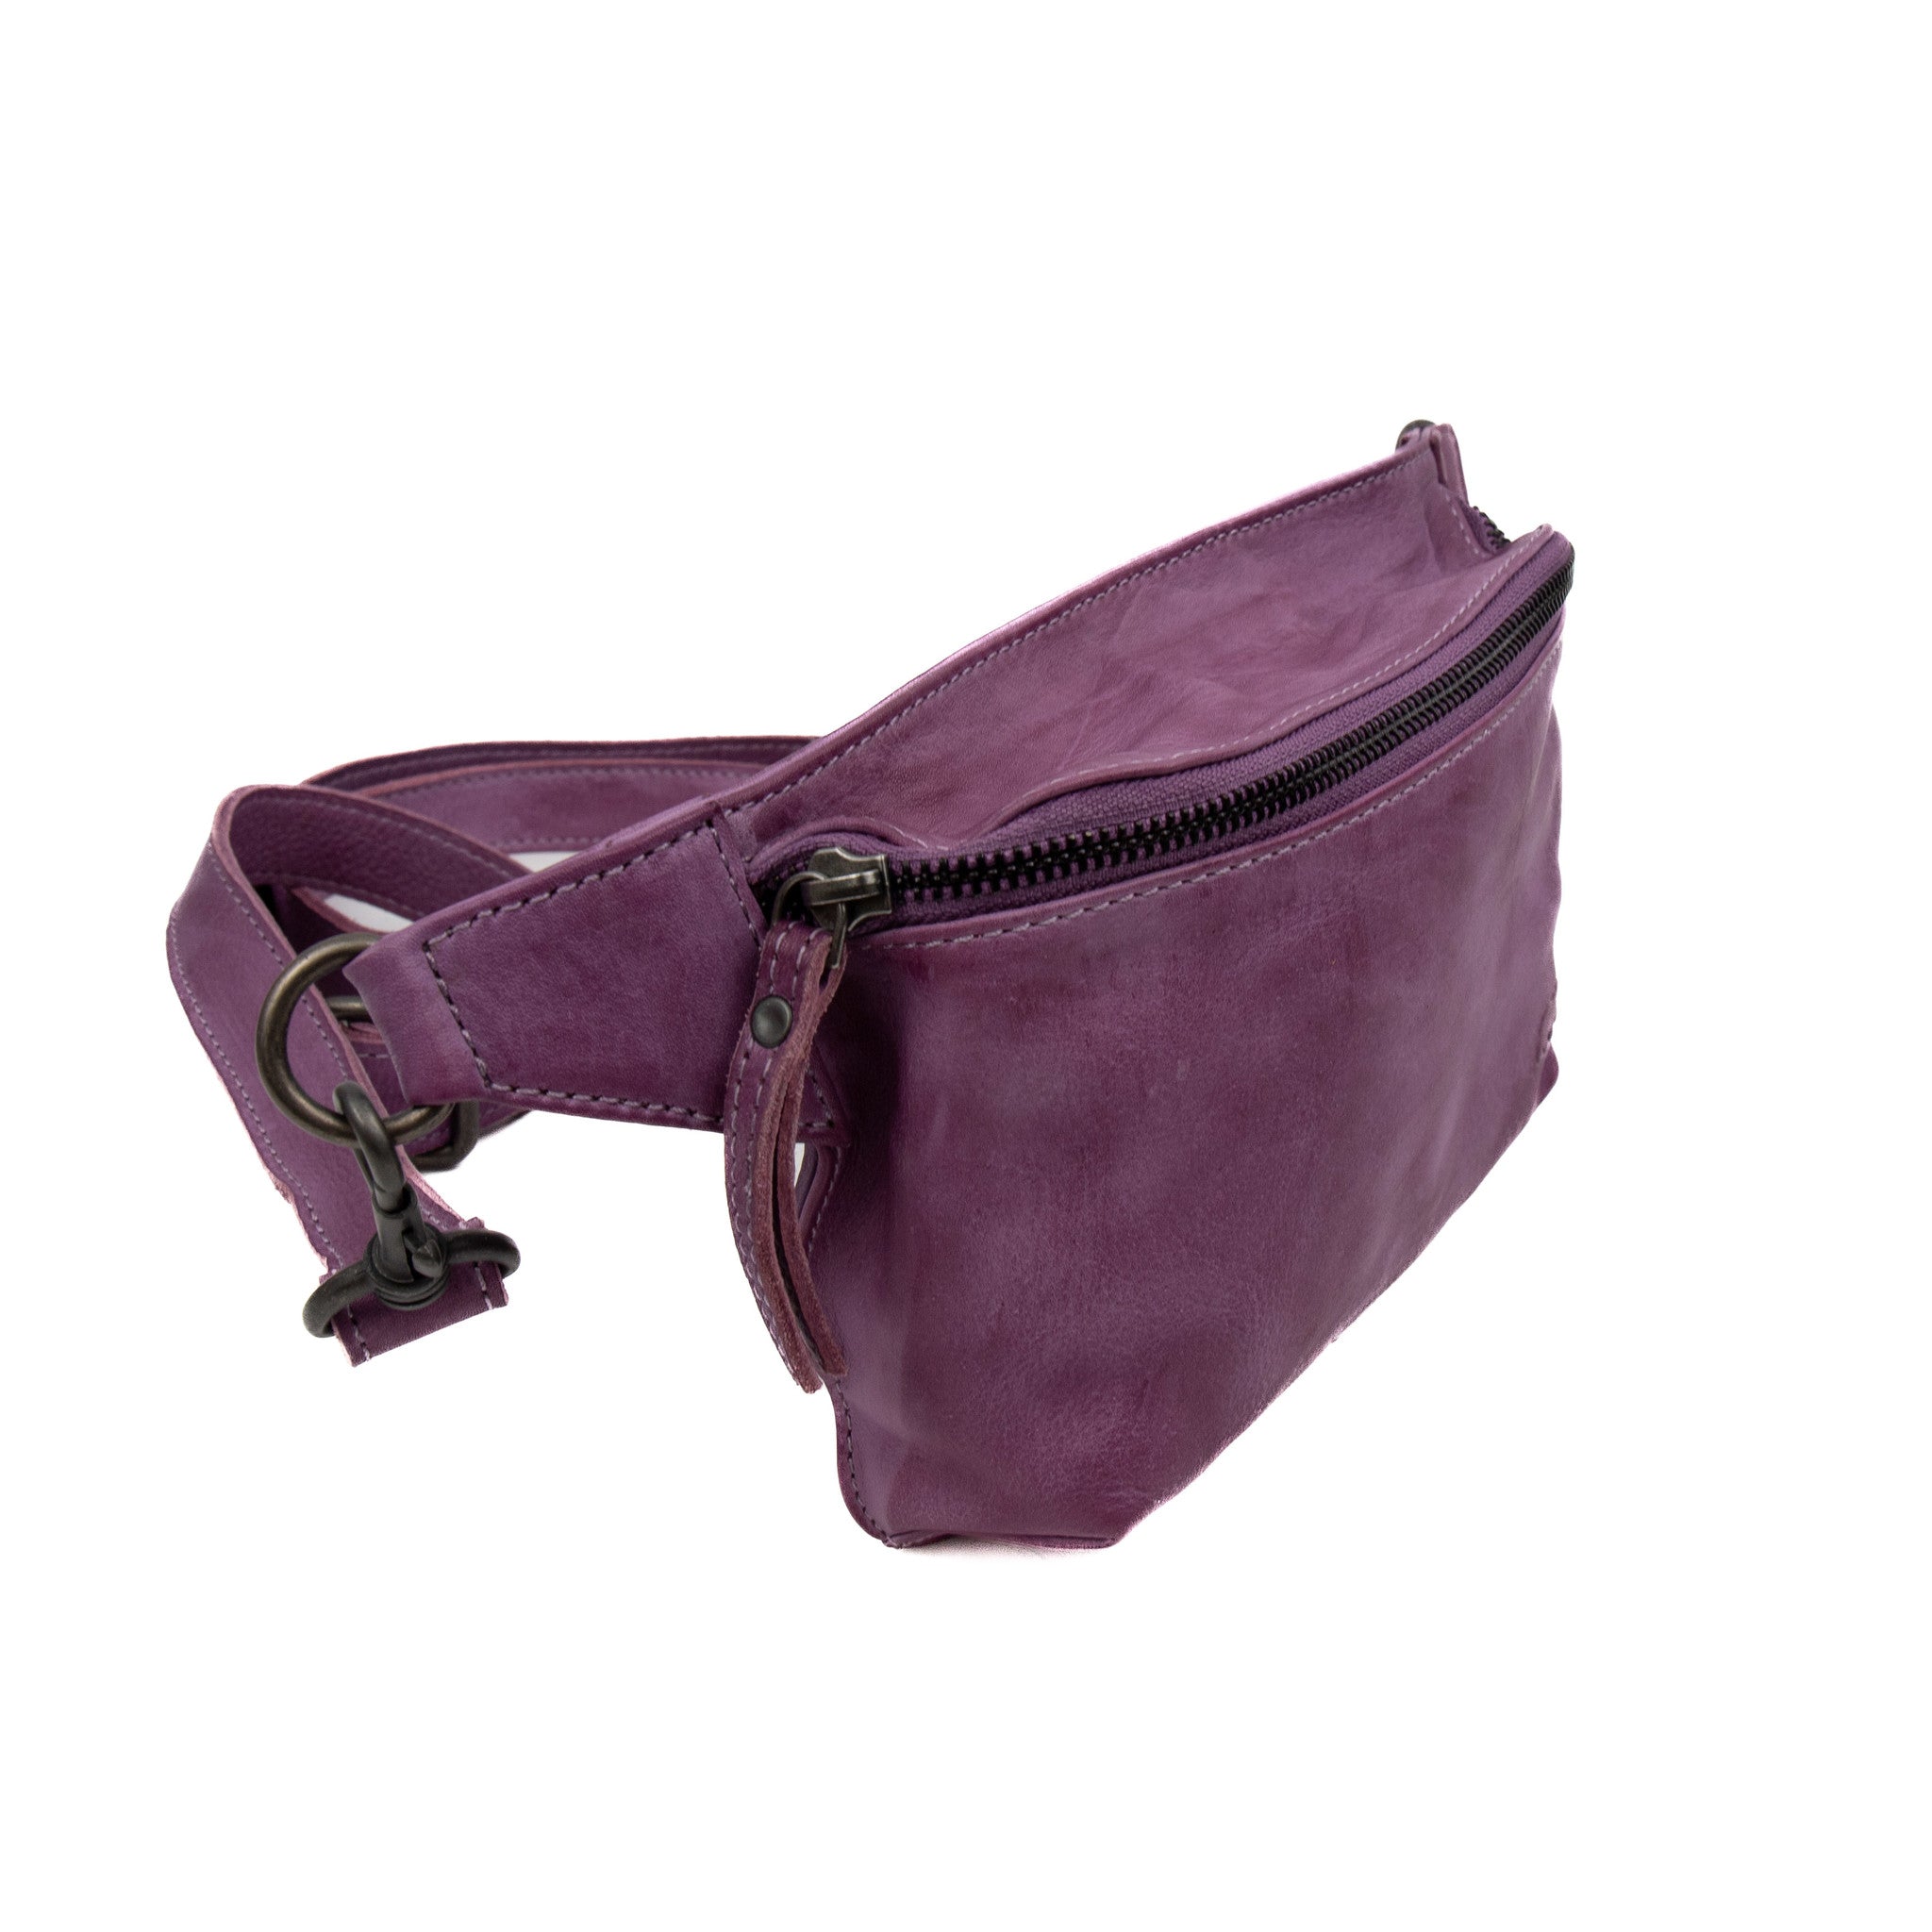 Waist bag 'Stef' lavender - CP 2352